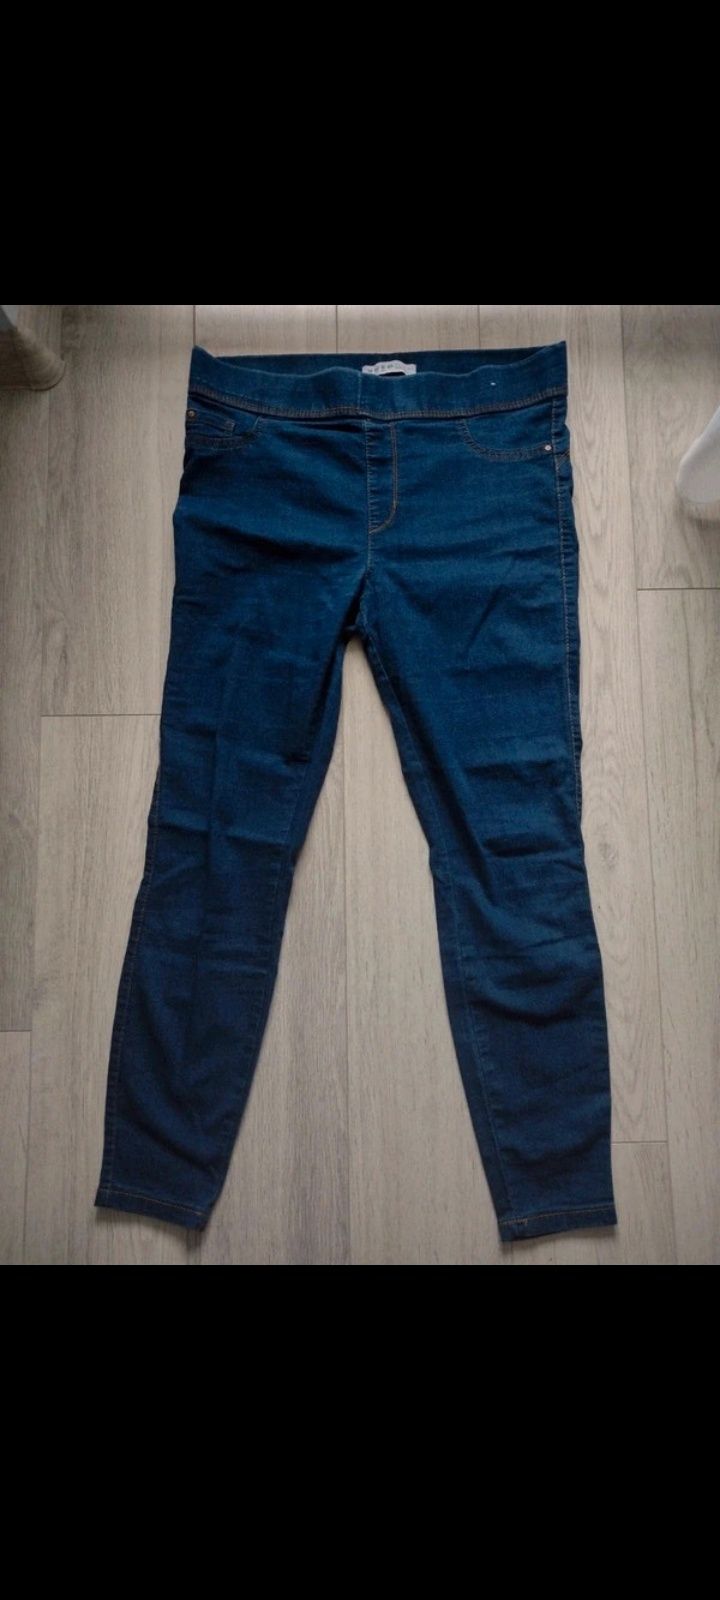 Tregginsy r 42 xl jeansy spodnie denim